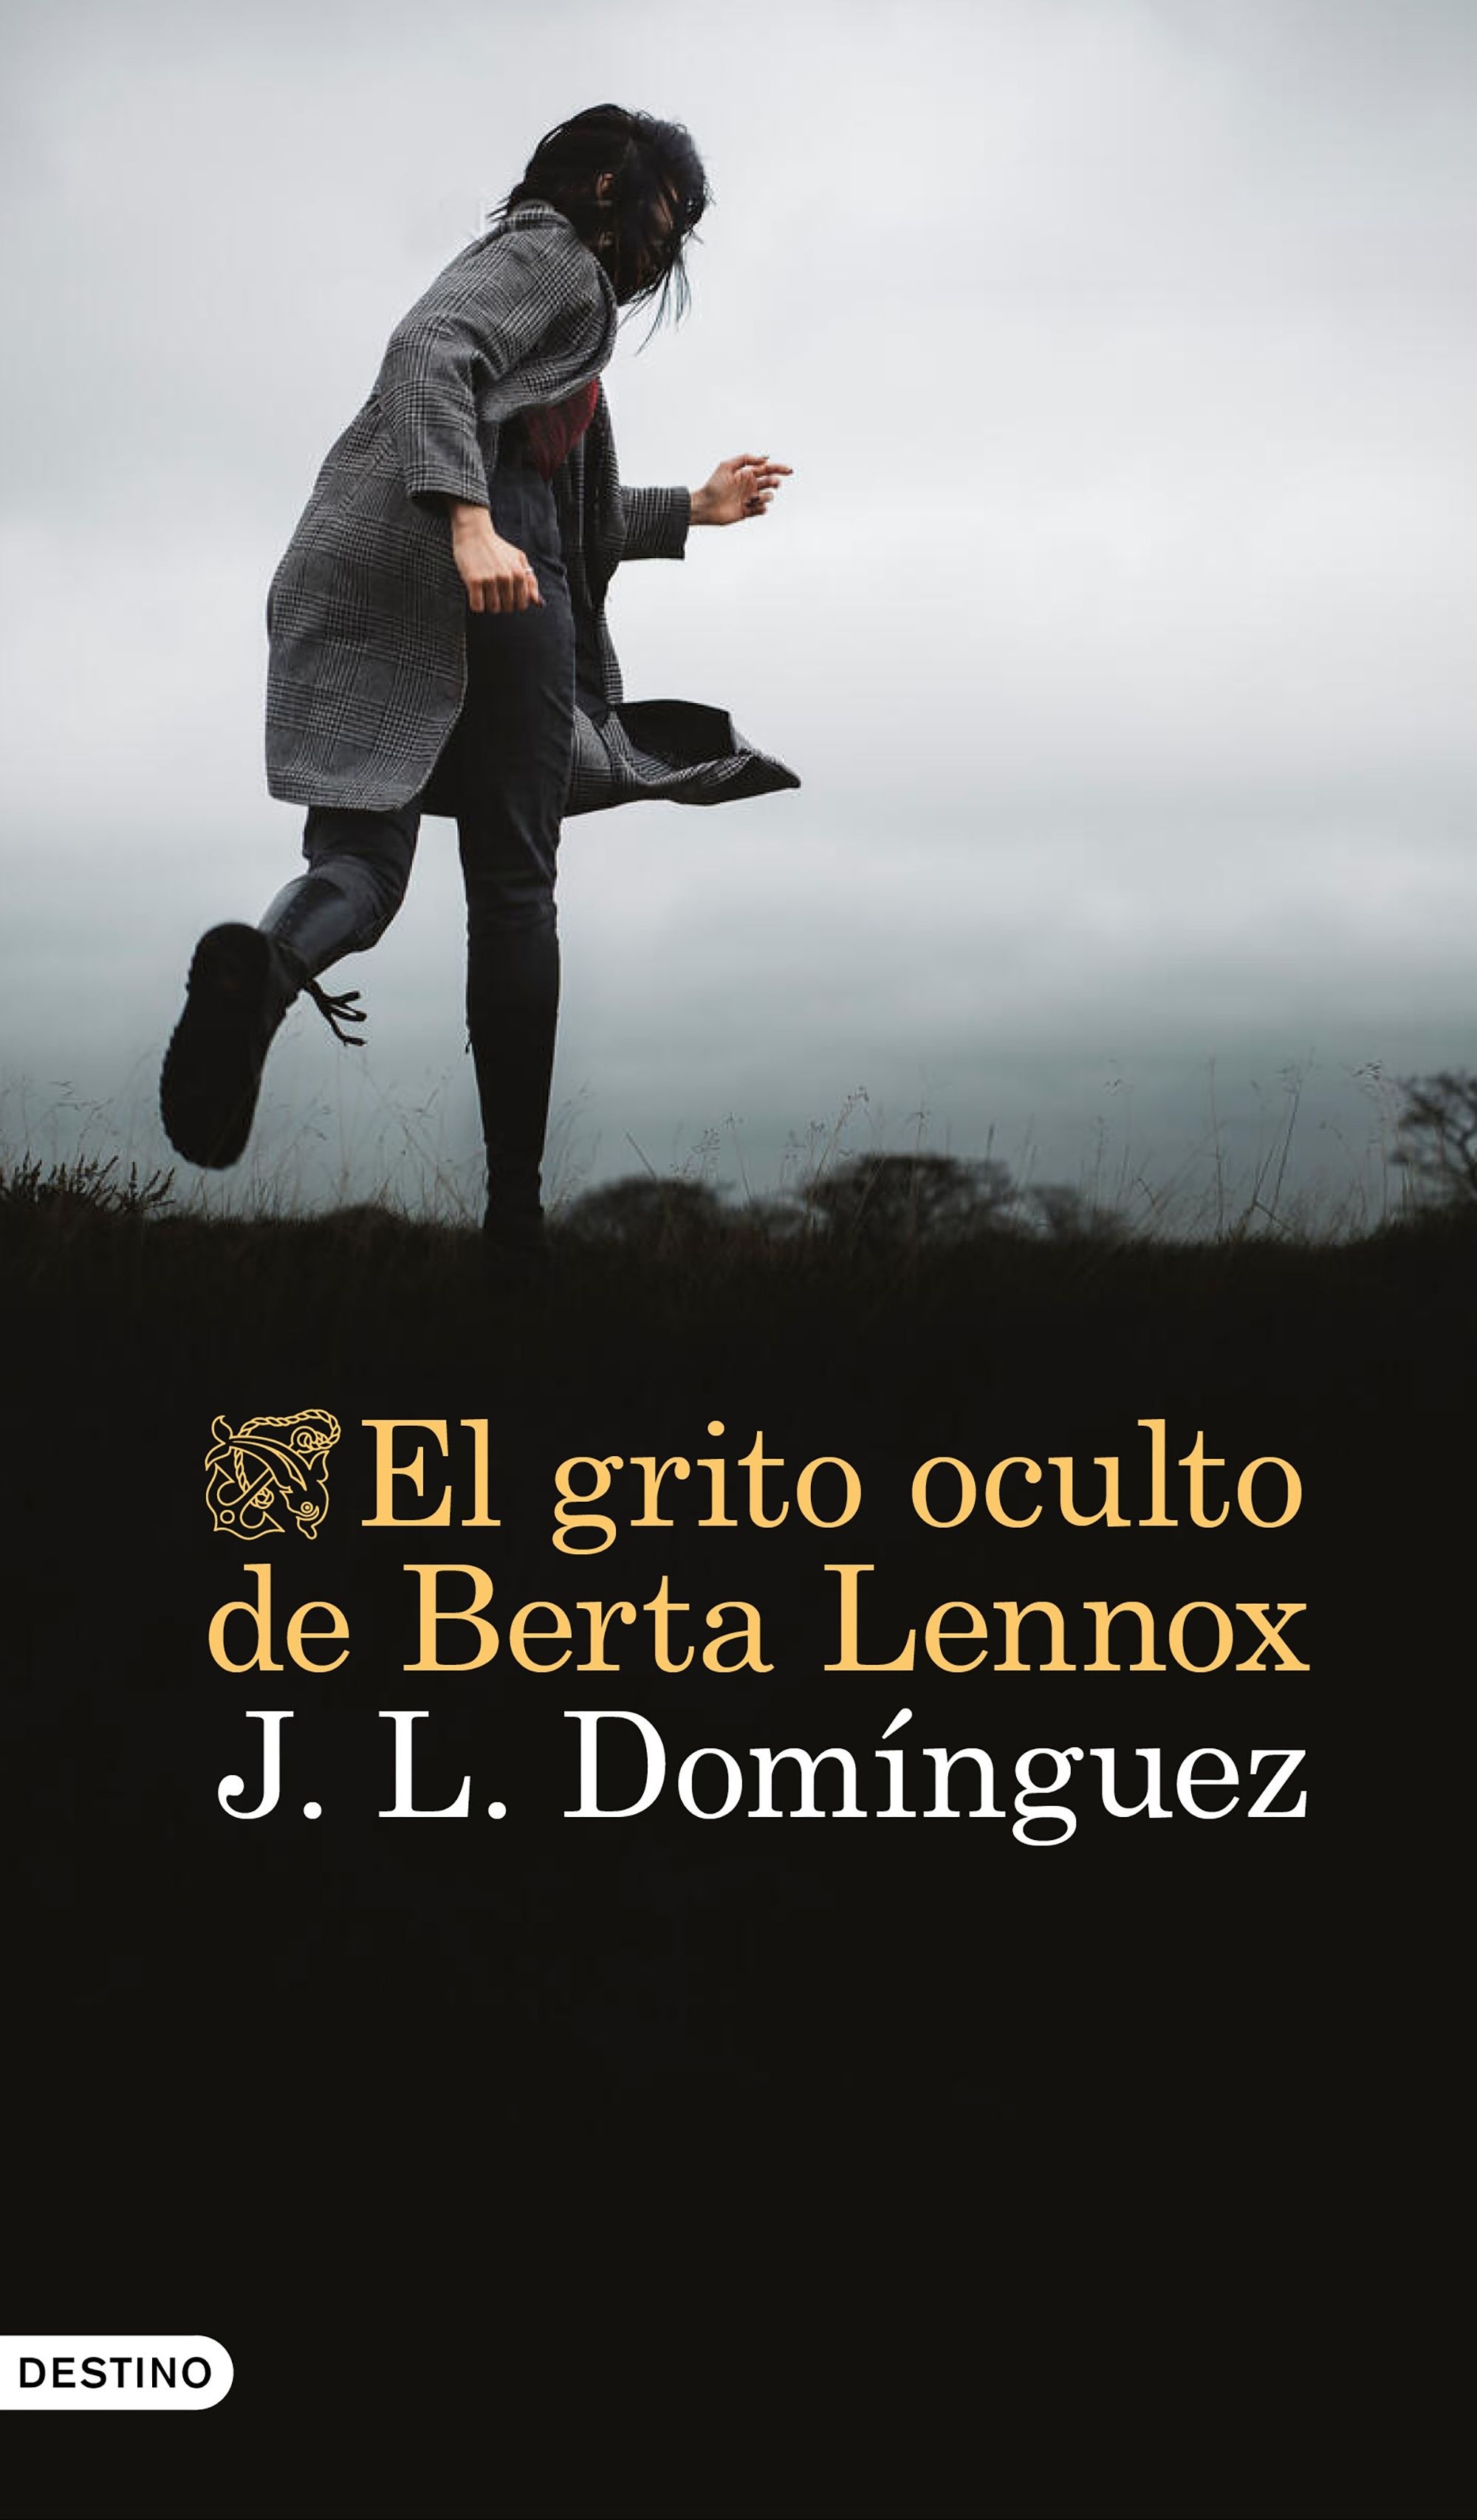 Grito oculto de Berta Lennox, El